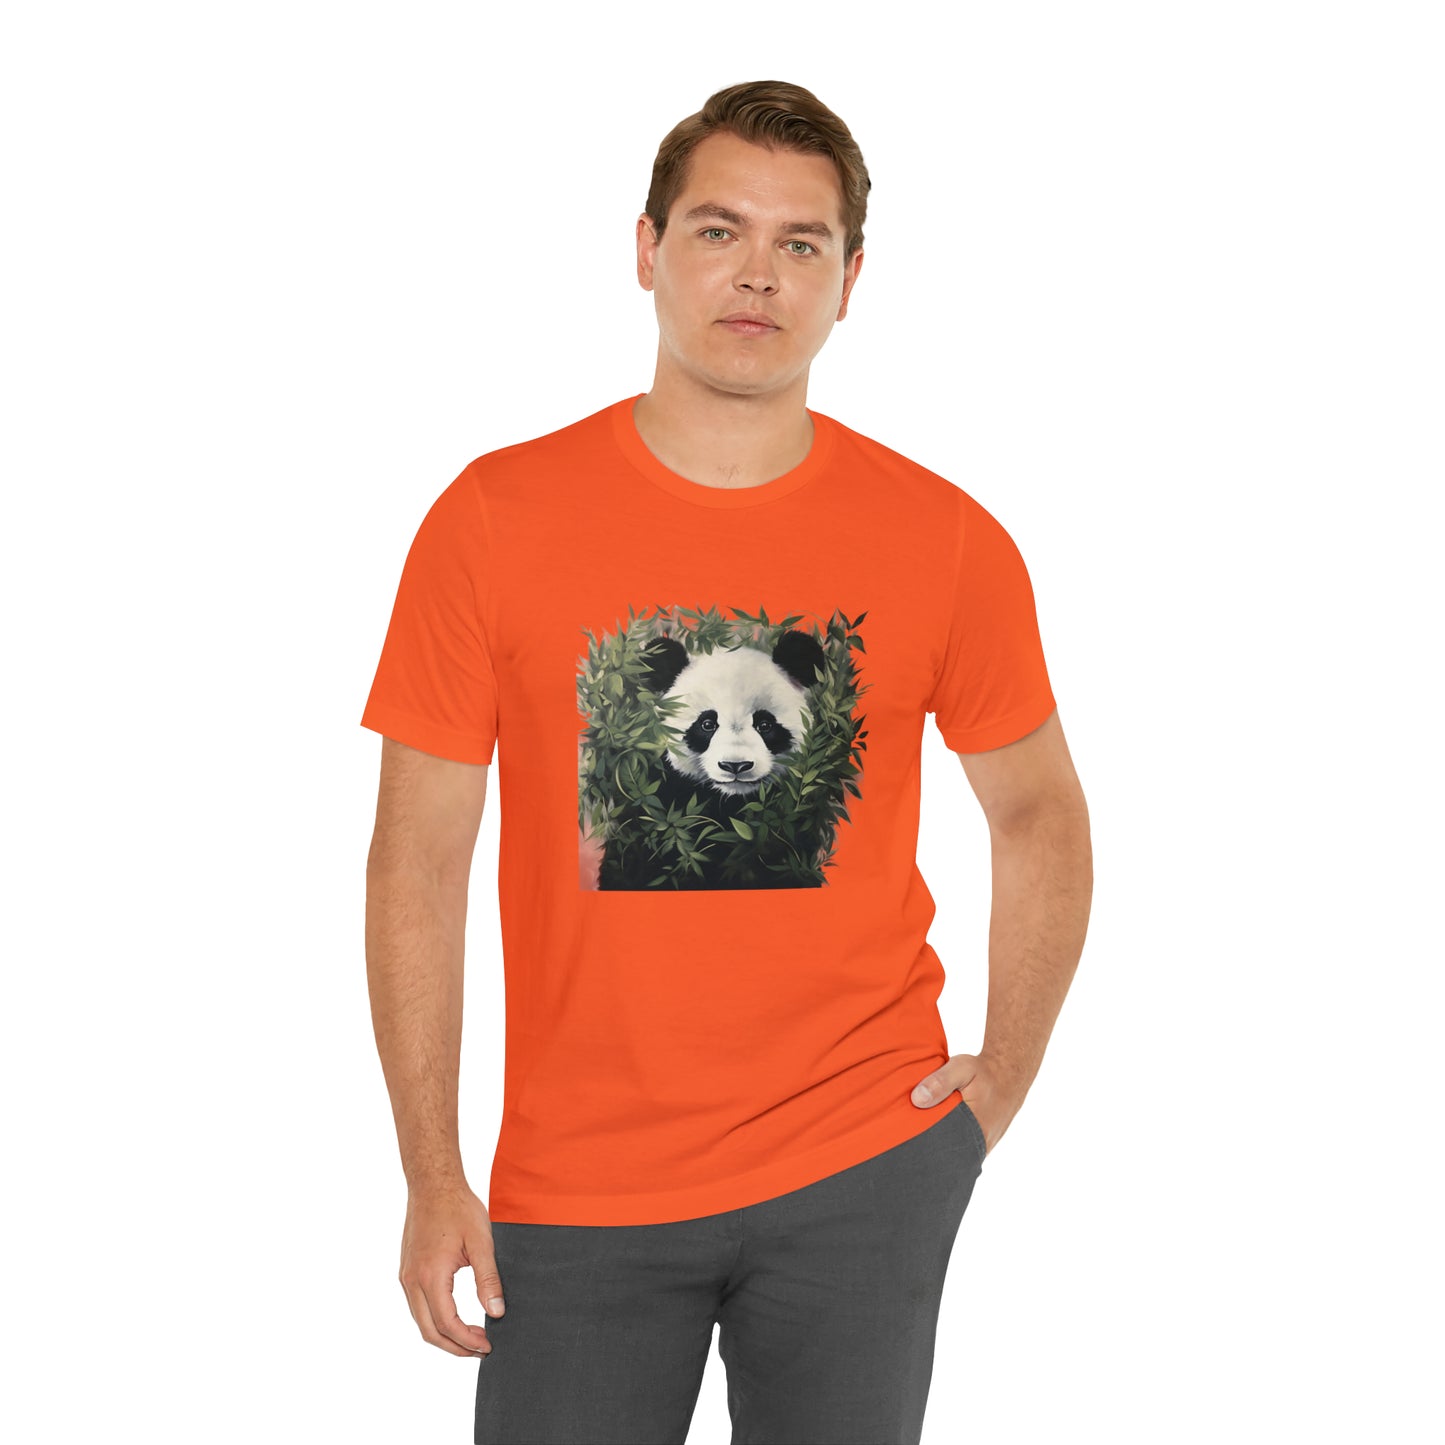 Panda Print Short Sleeve Tee